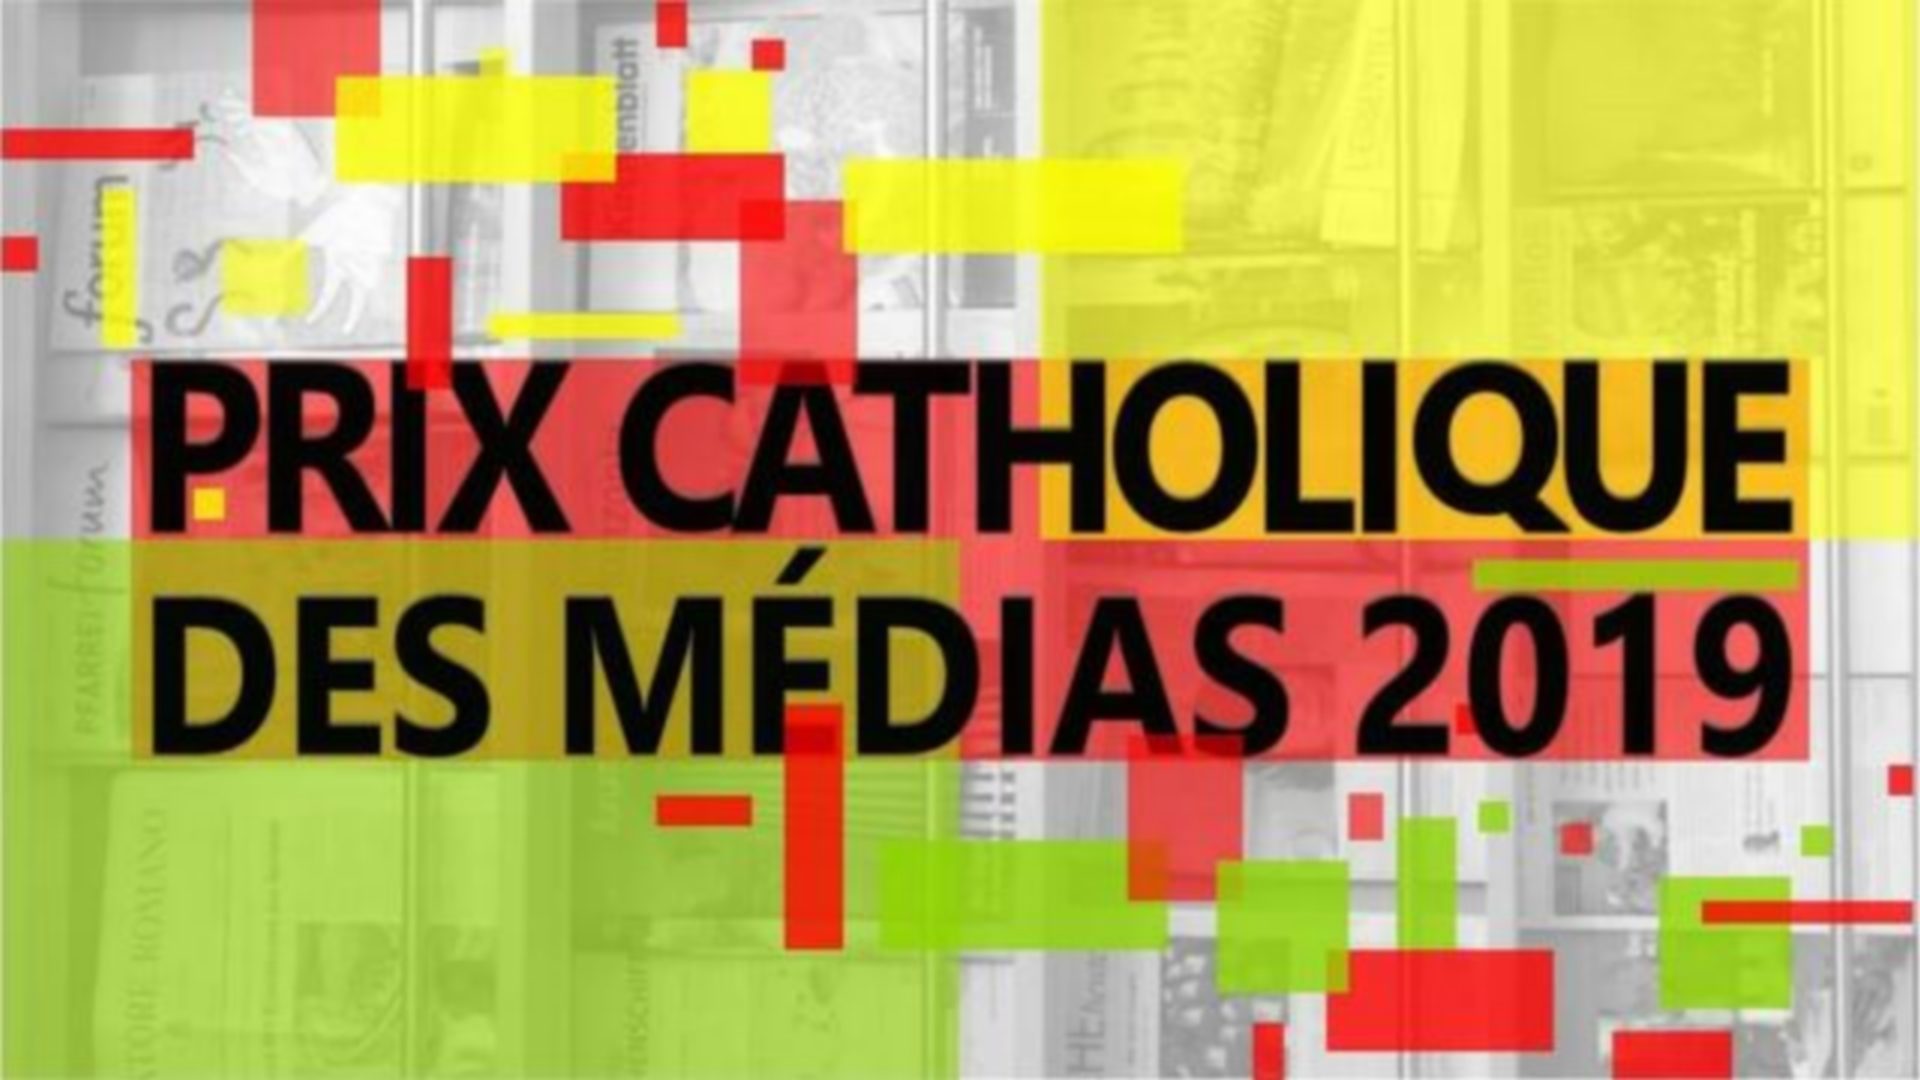 La distinction dotée de 5’000 francs a pour but de manifester l’intérêt de l’Eglise catholique pour les médias 